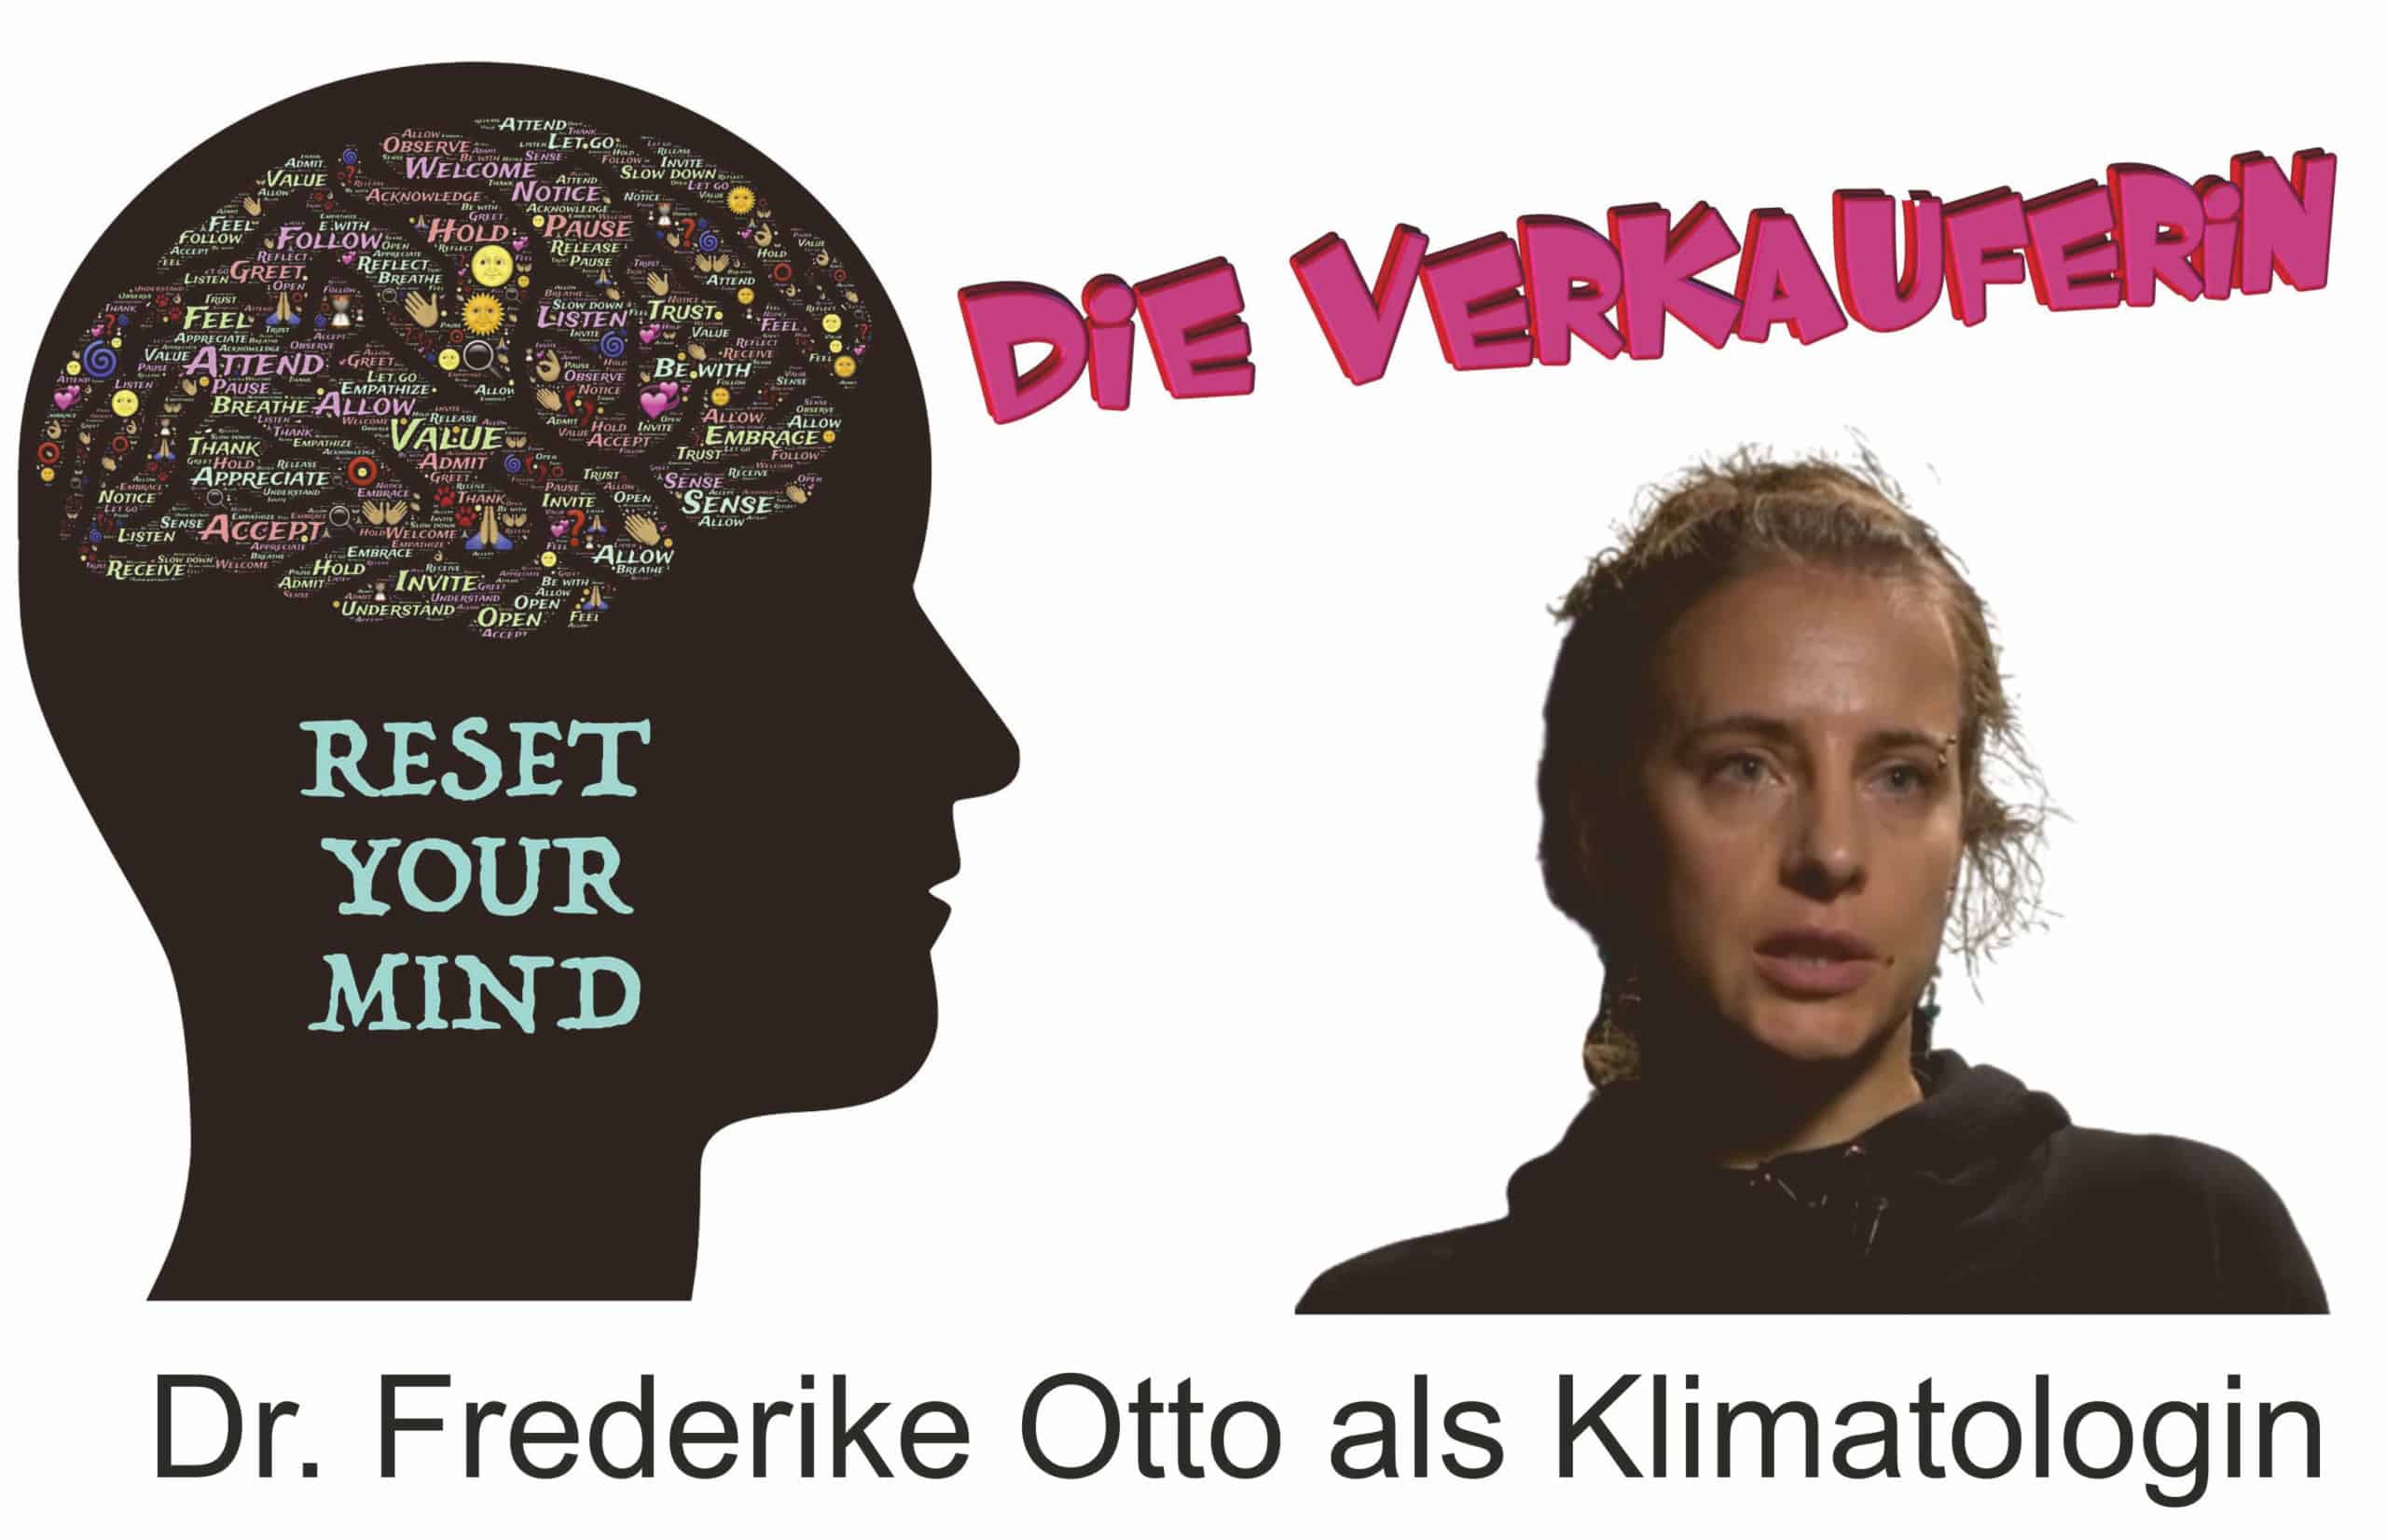 Frederike Otto und ihre sog. Attributionsforschung